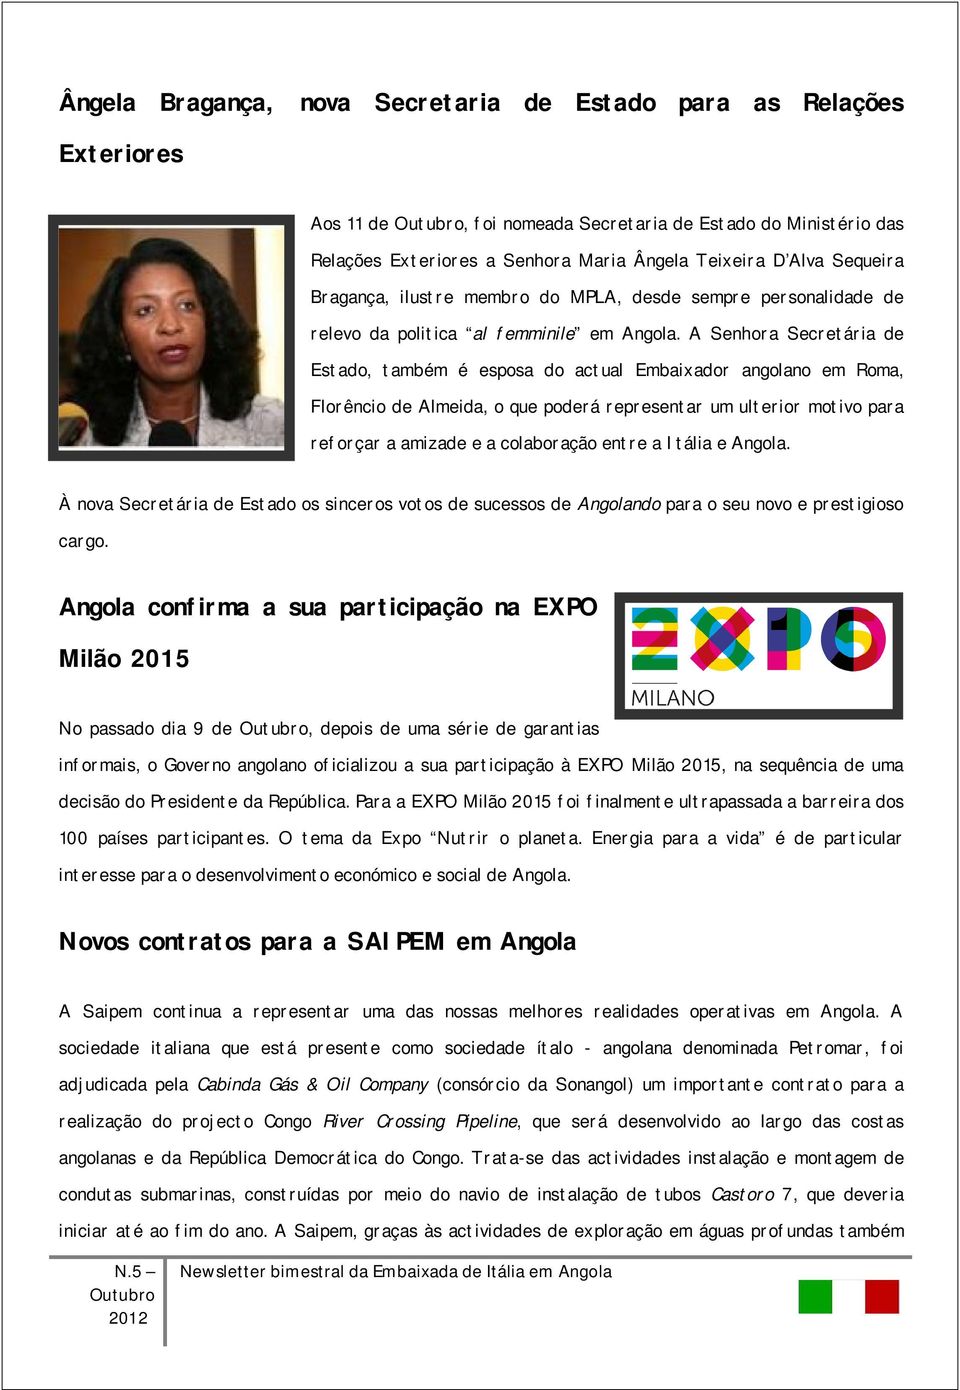 A Senhora Secretária de Estado, também é esposa do actual Embaixador angolano em Roma, Florêncio de Almeida, o que poderá representar um ulterior motivo para reforçar a amizade e a colaboração entre